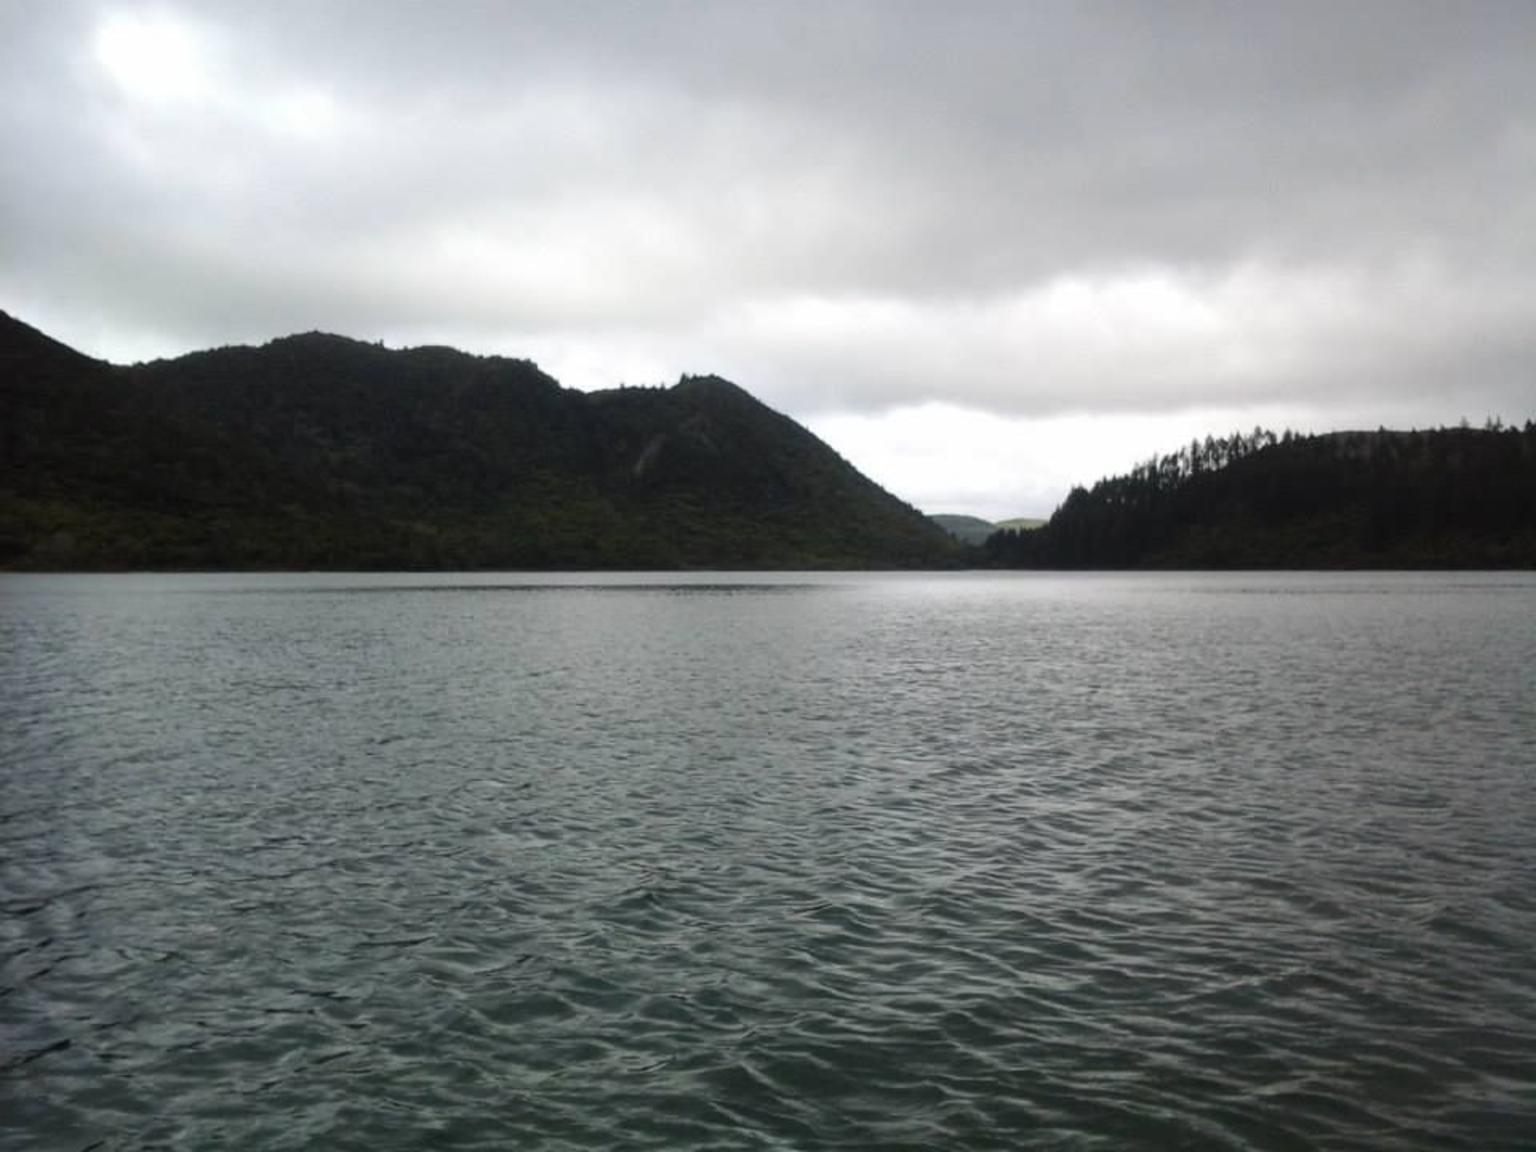 Lakes Tikitapu and Okareka